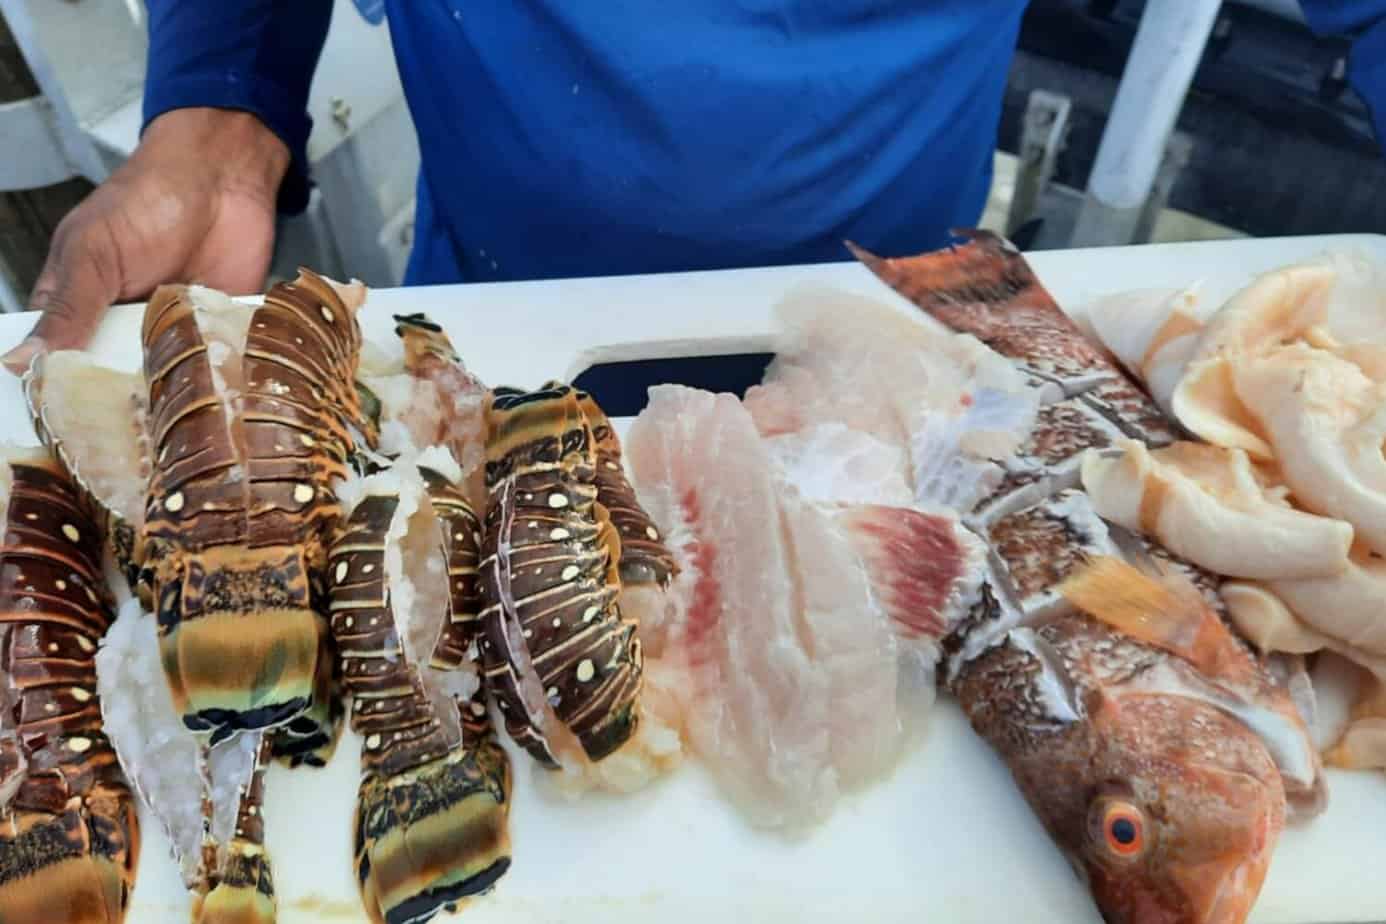 Lobster - Conch - Hog Fish - BBQ